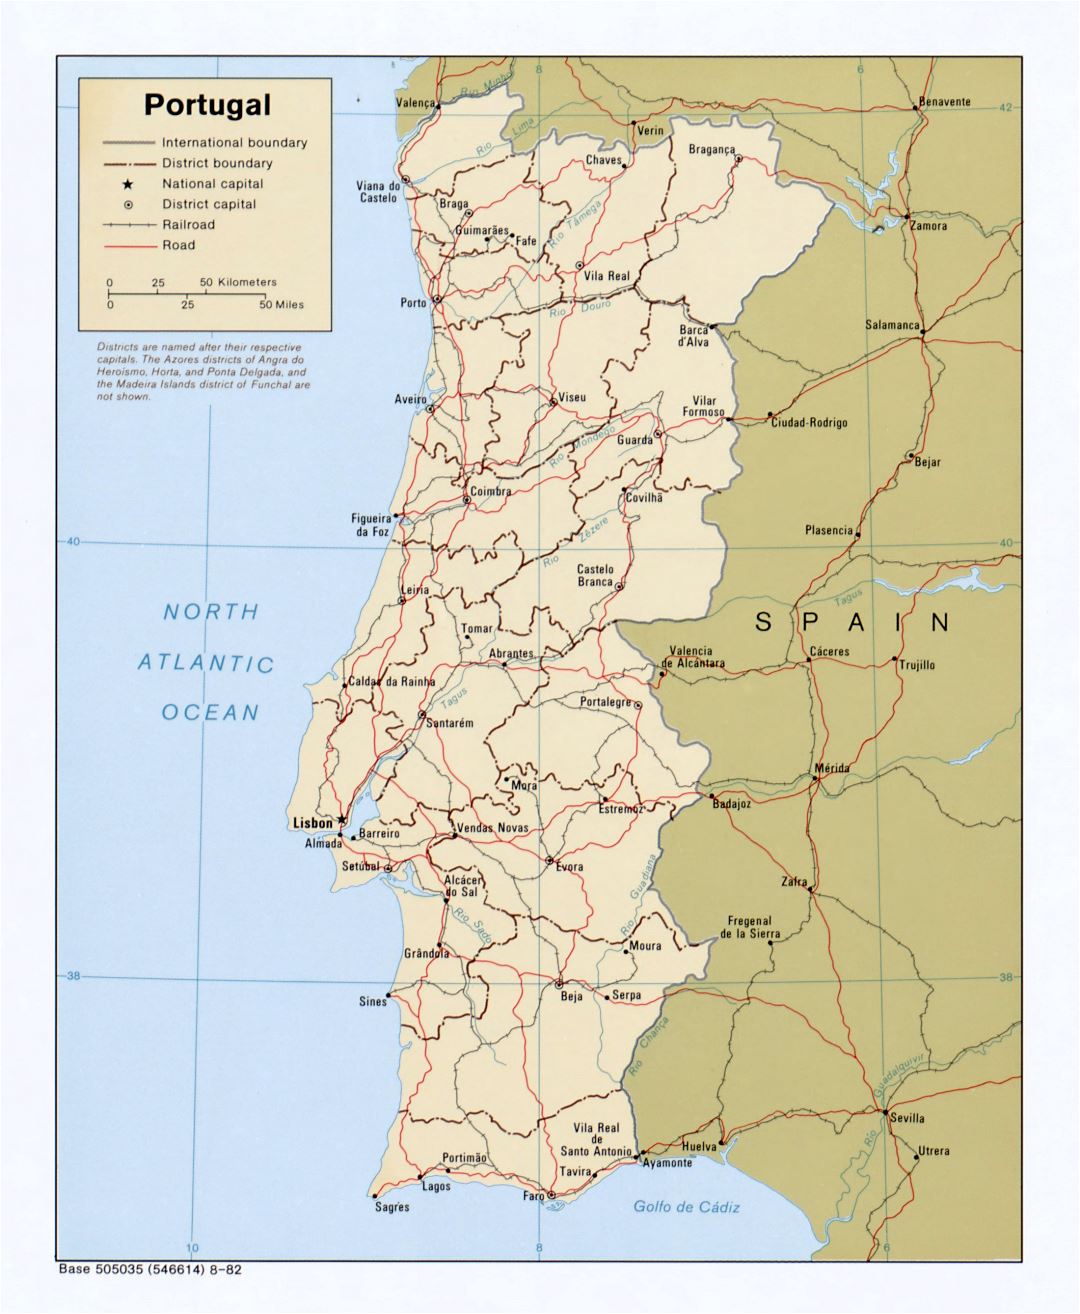 Grande detallado mapa política y administrativa de Portugal con carreteras y principales ciudades - 1982